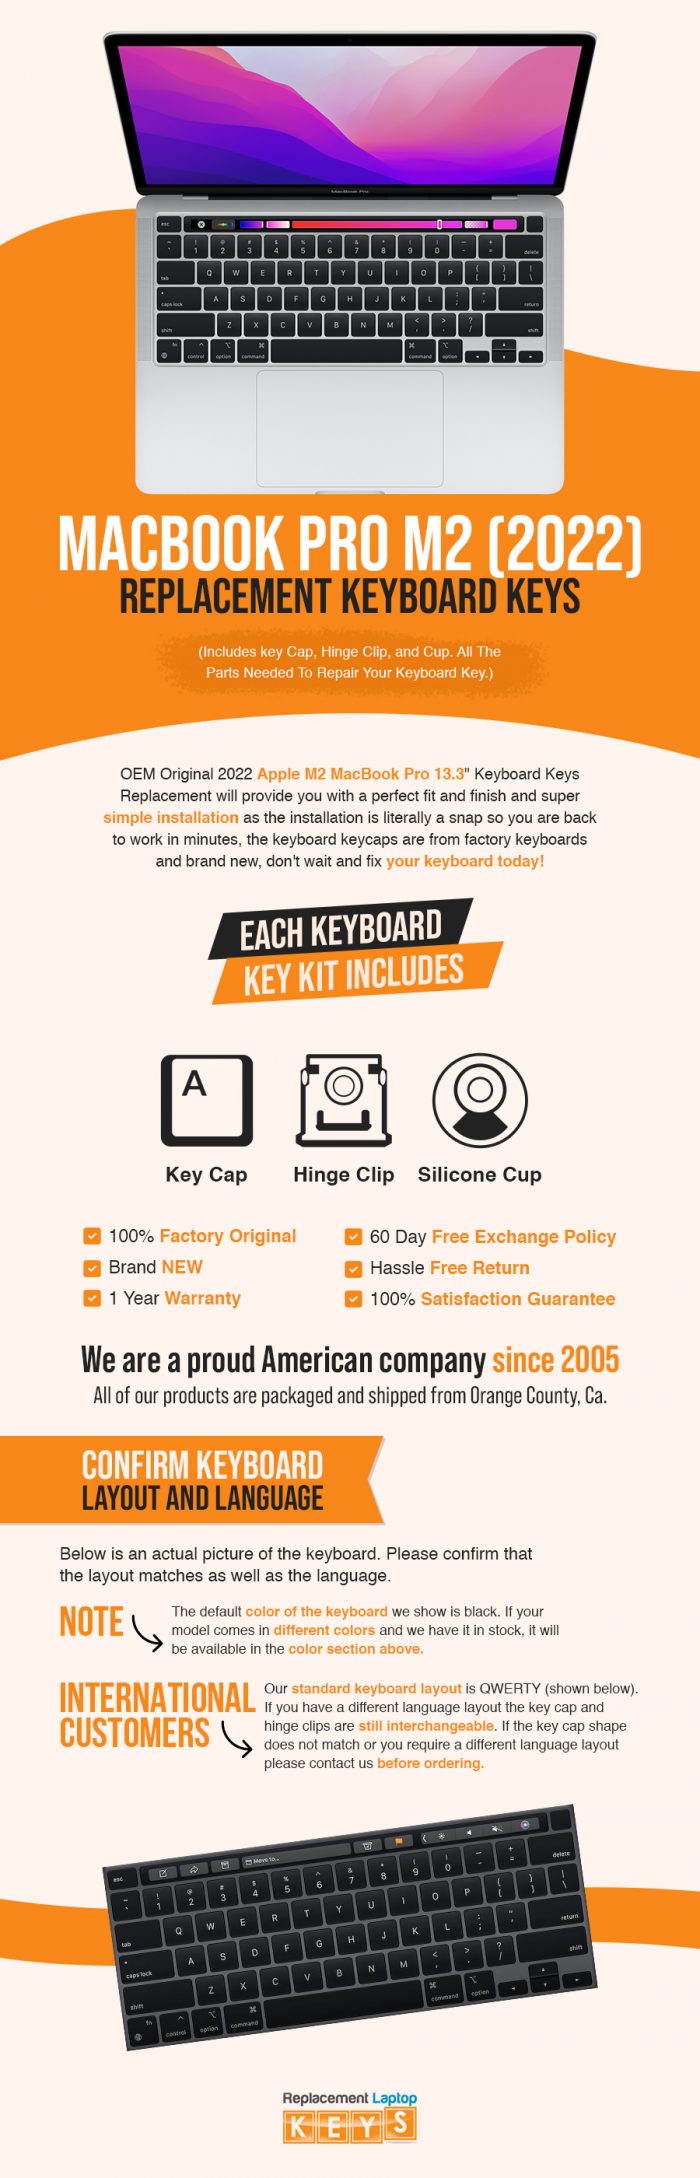 Shop100% OEM MacBook Pro M2 (2022) Keyboard Keys Online from Replacement Laptop Keys